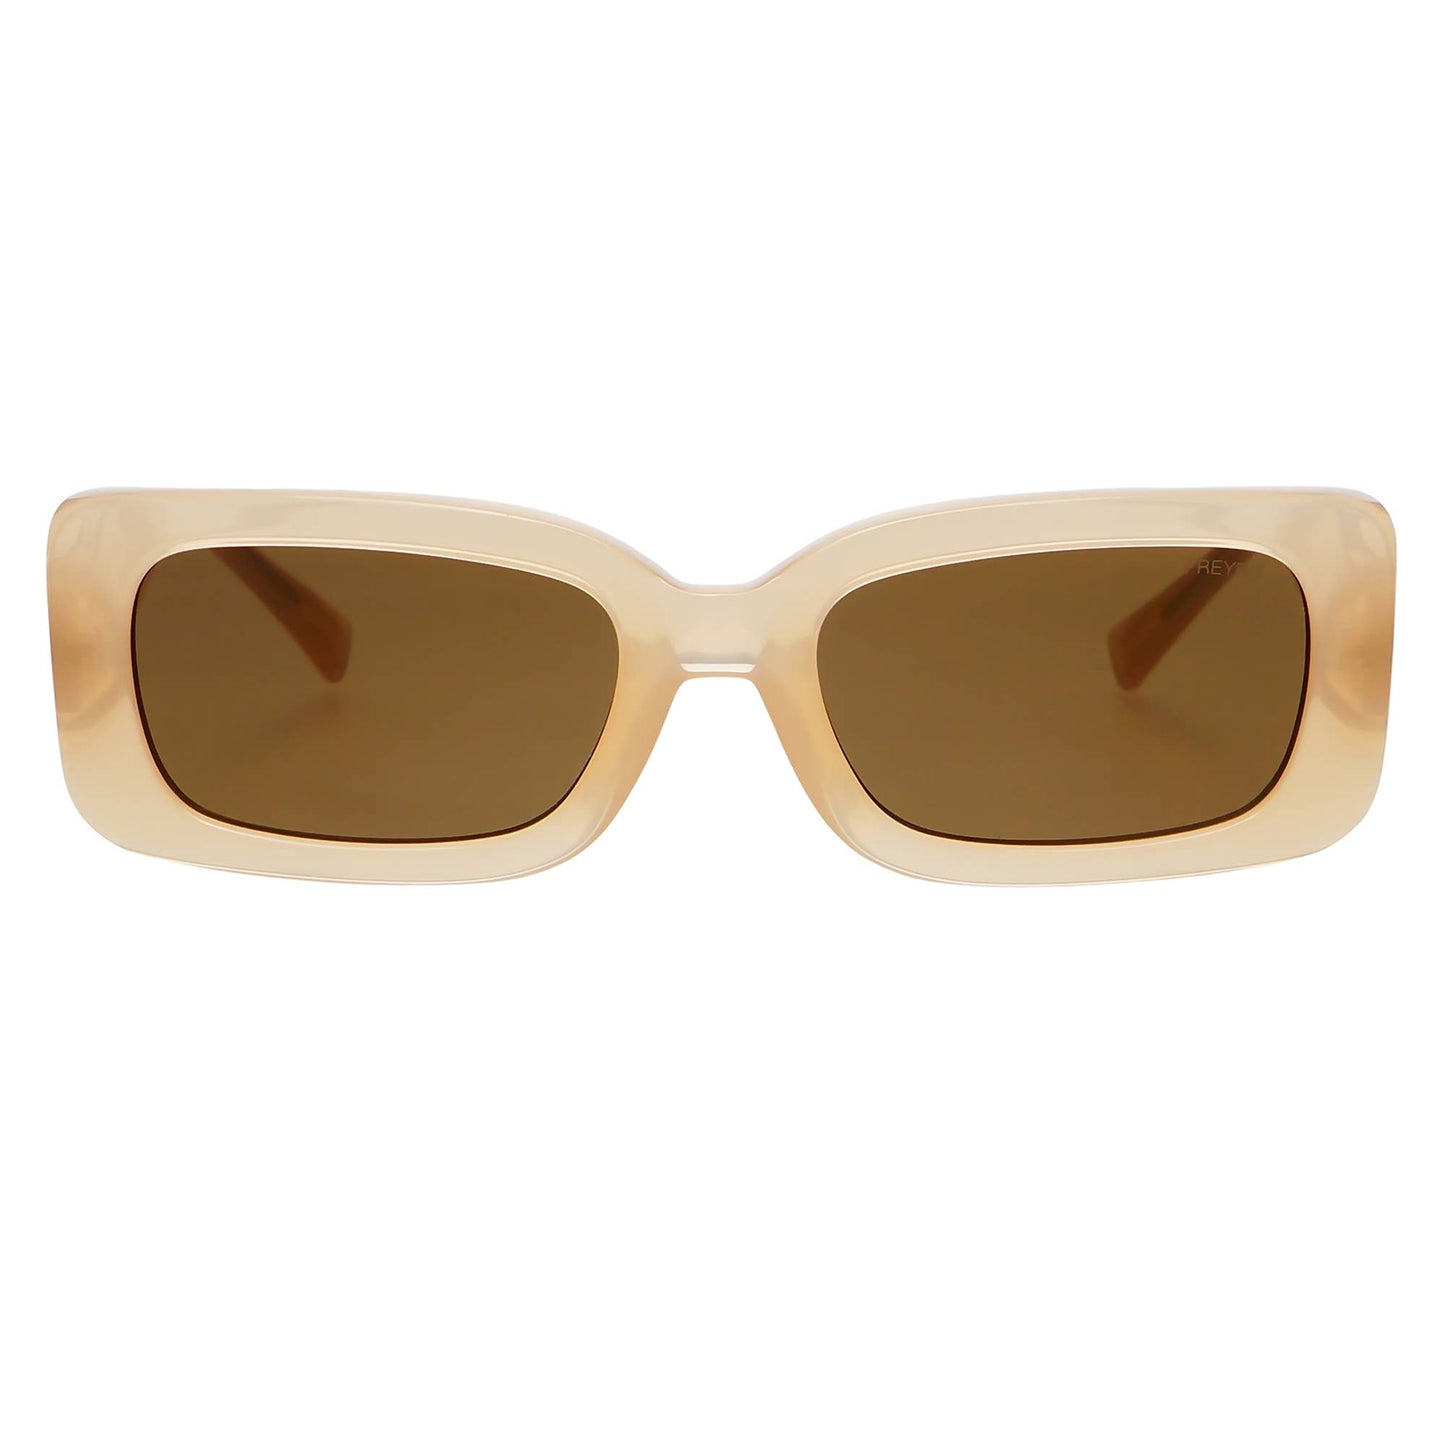 Noa Unisex Fashion Sunglasses